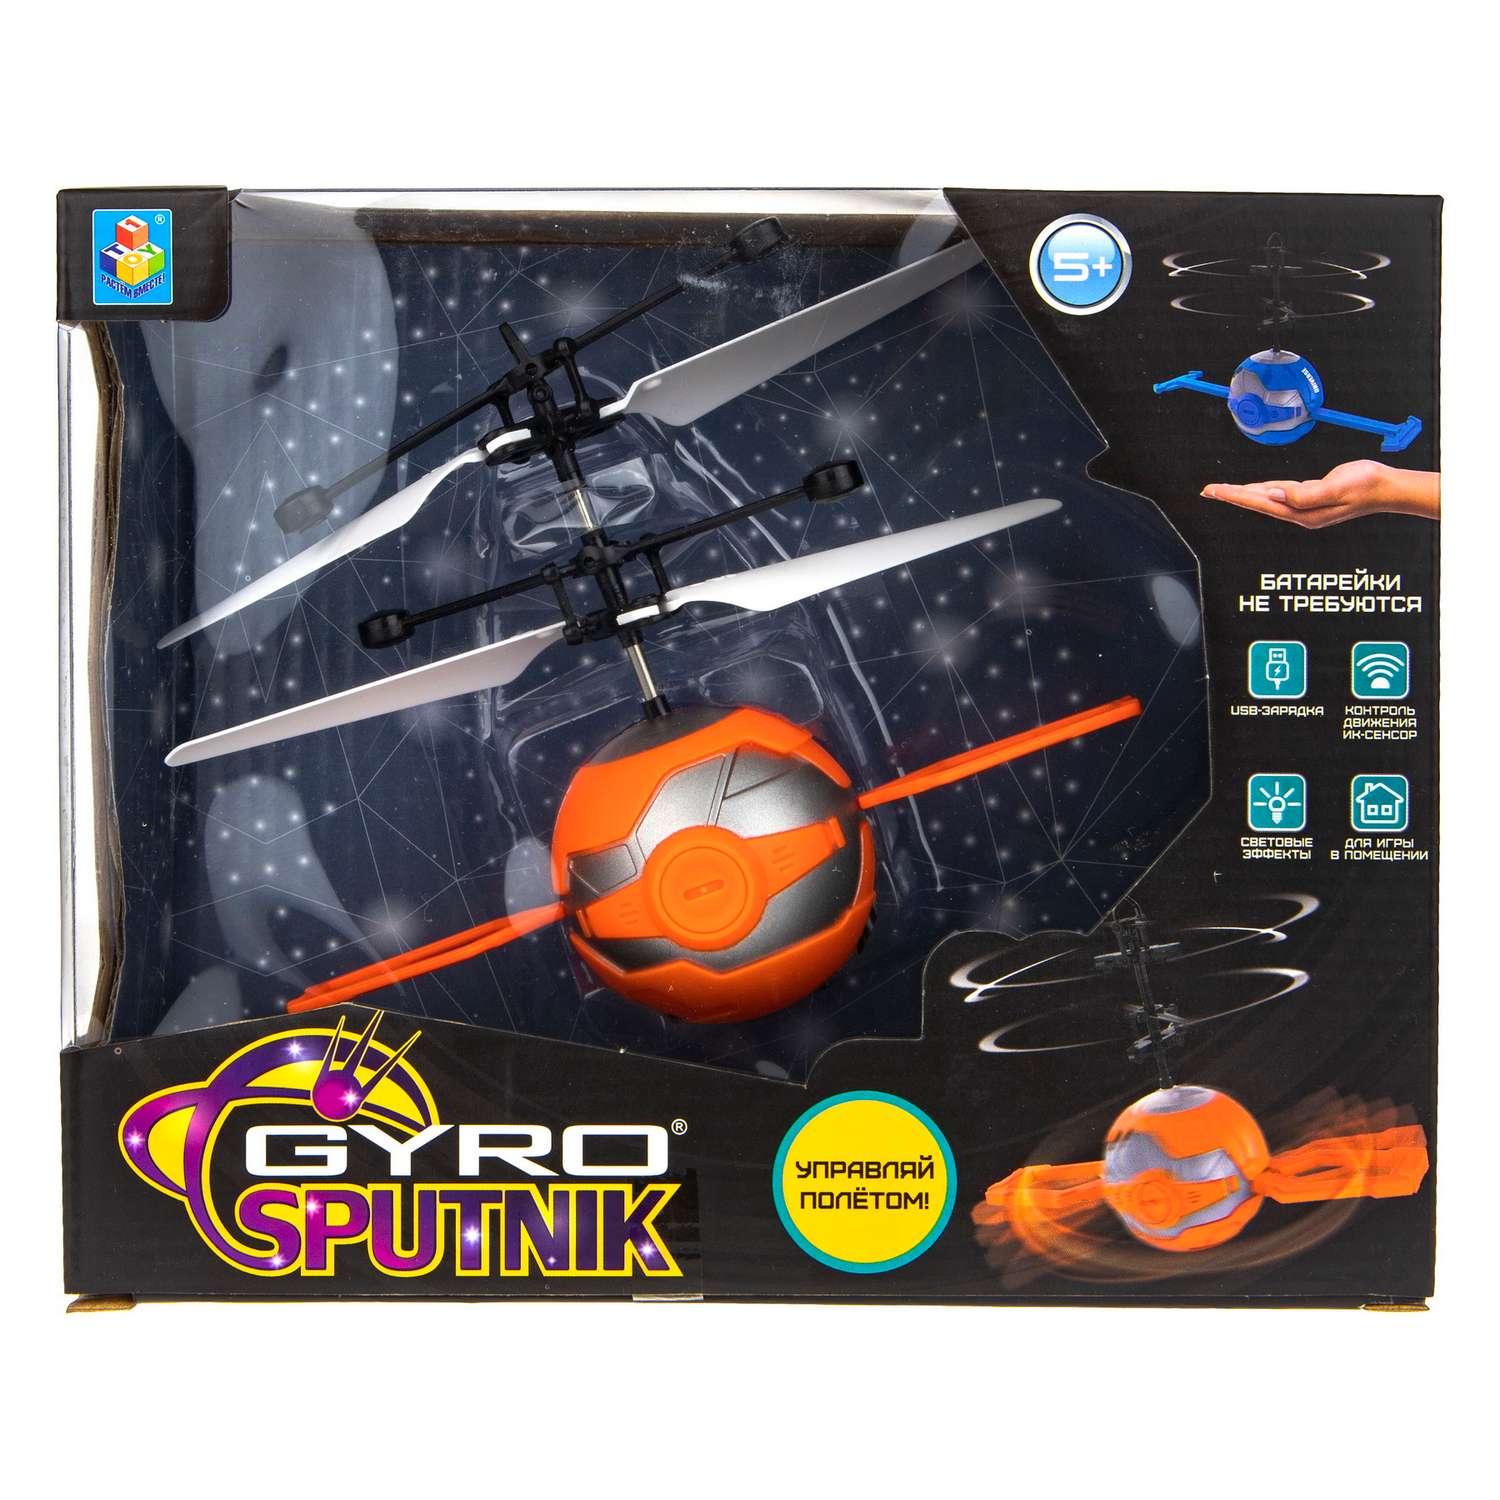 Интерактивная игрушка 1TOY Gyro-SPUTNIK шар с лопастями на сенсорном управлении со светом - фото 4